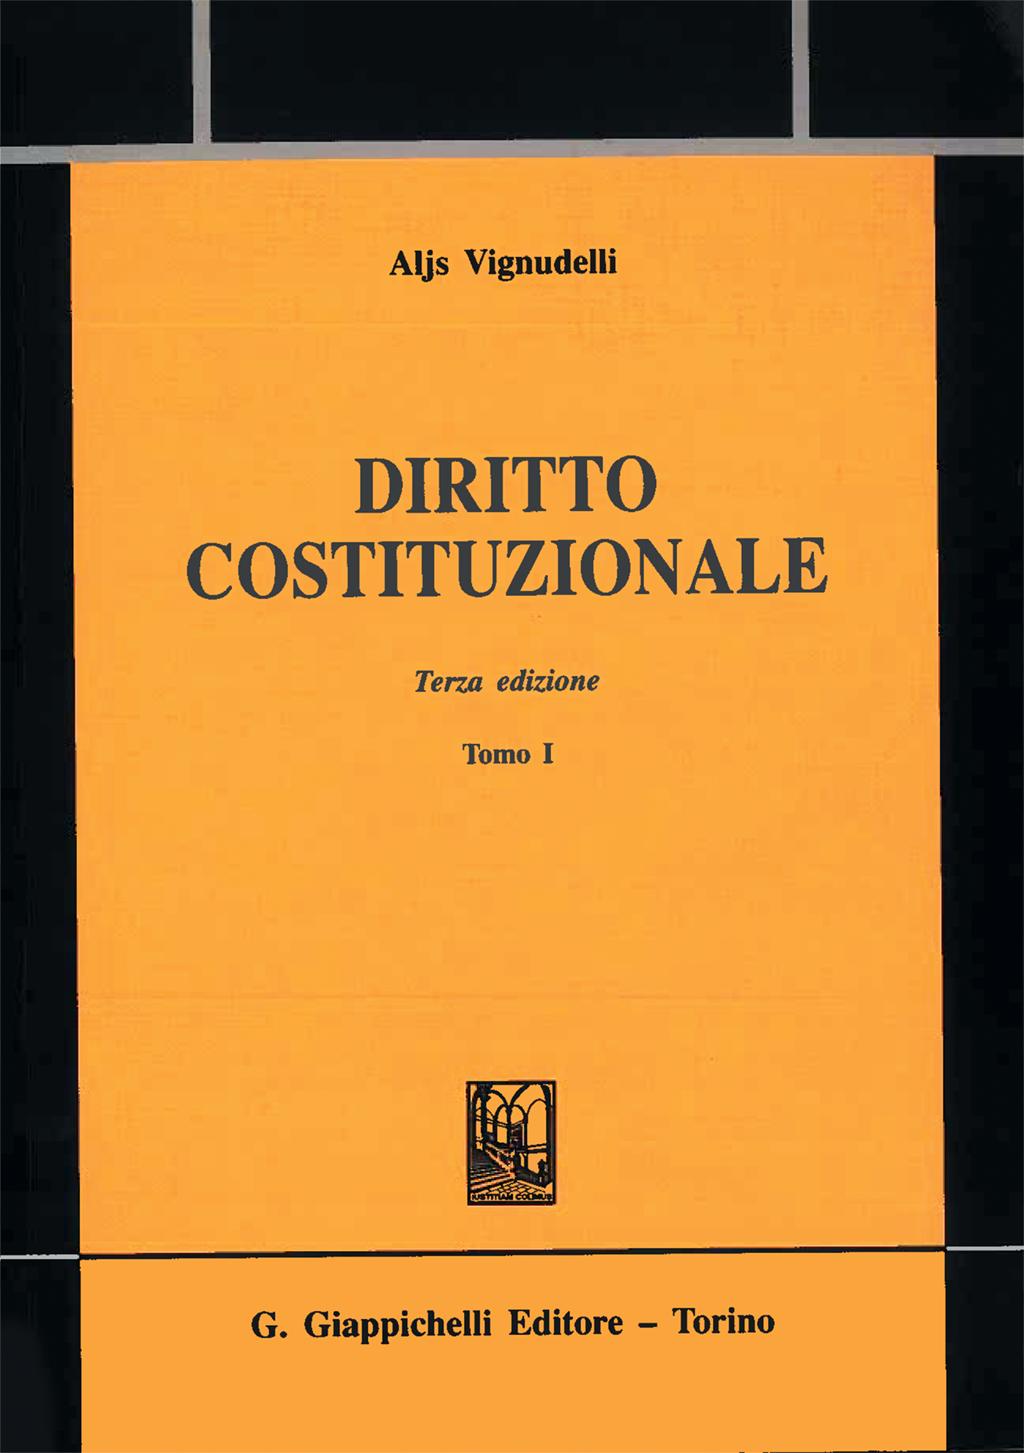 Aljs Vignudelli - Diritto costituzionale Terza edizione